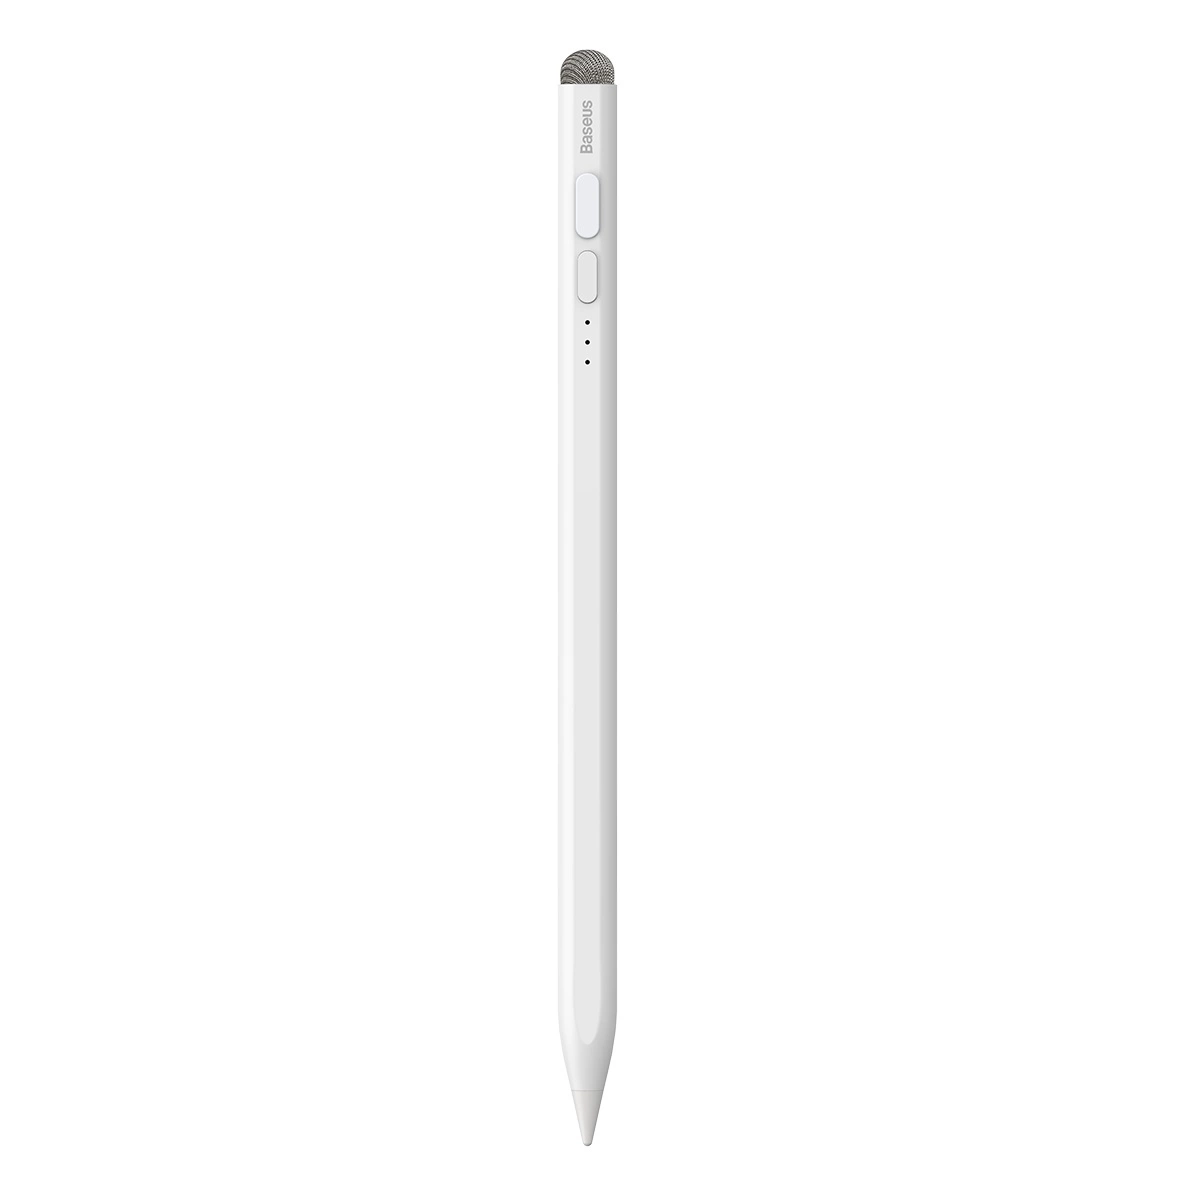 Aktivní/pasivní stylus pro iPad Baseus Smooth Writing 2 SXBC060302 - bílý